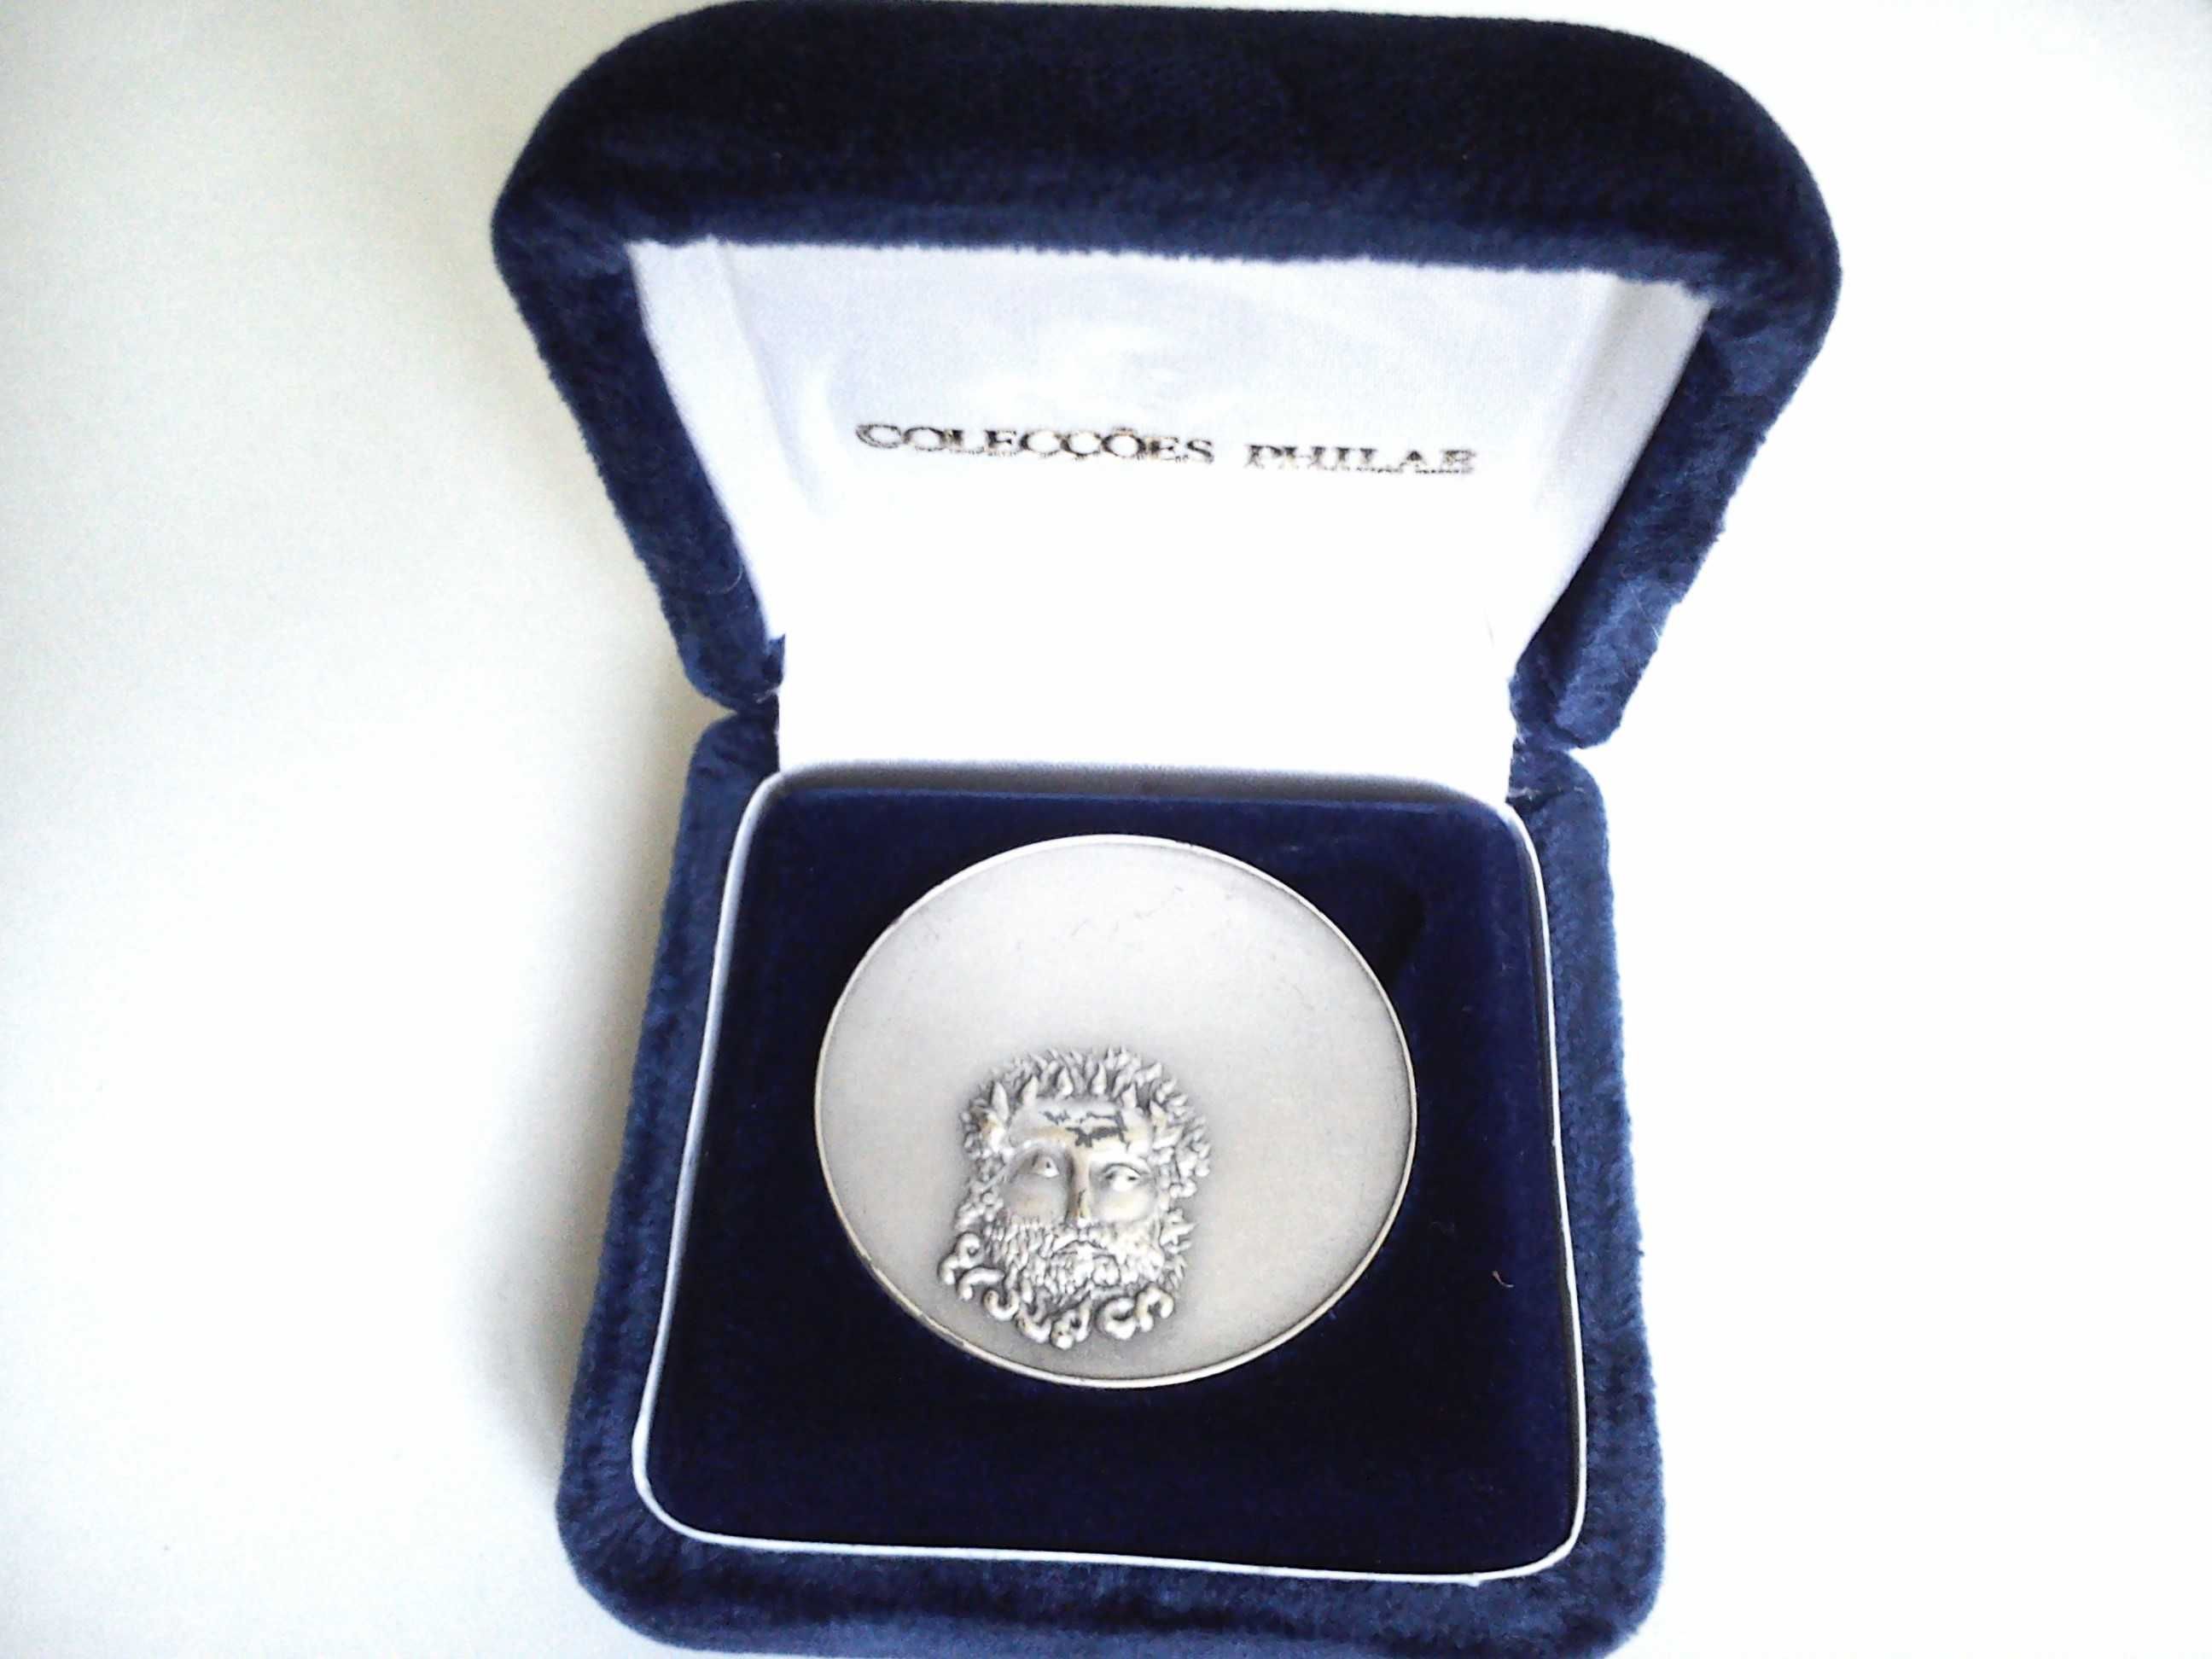 7 medalhas Camões - PRATA - Colecções Philae